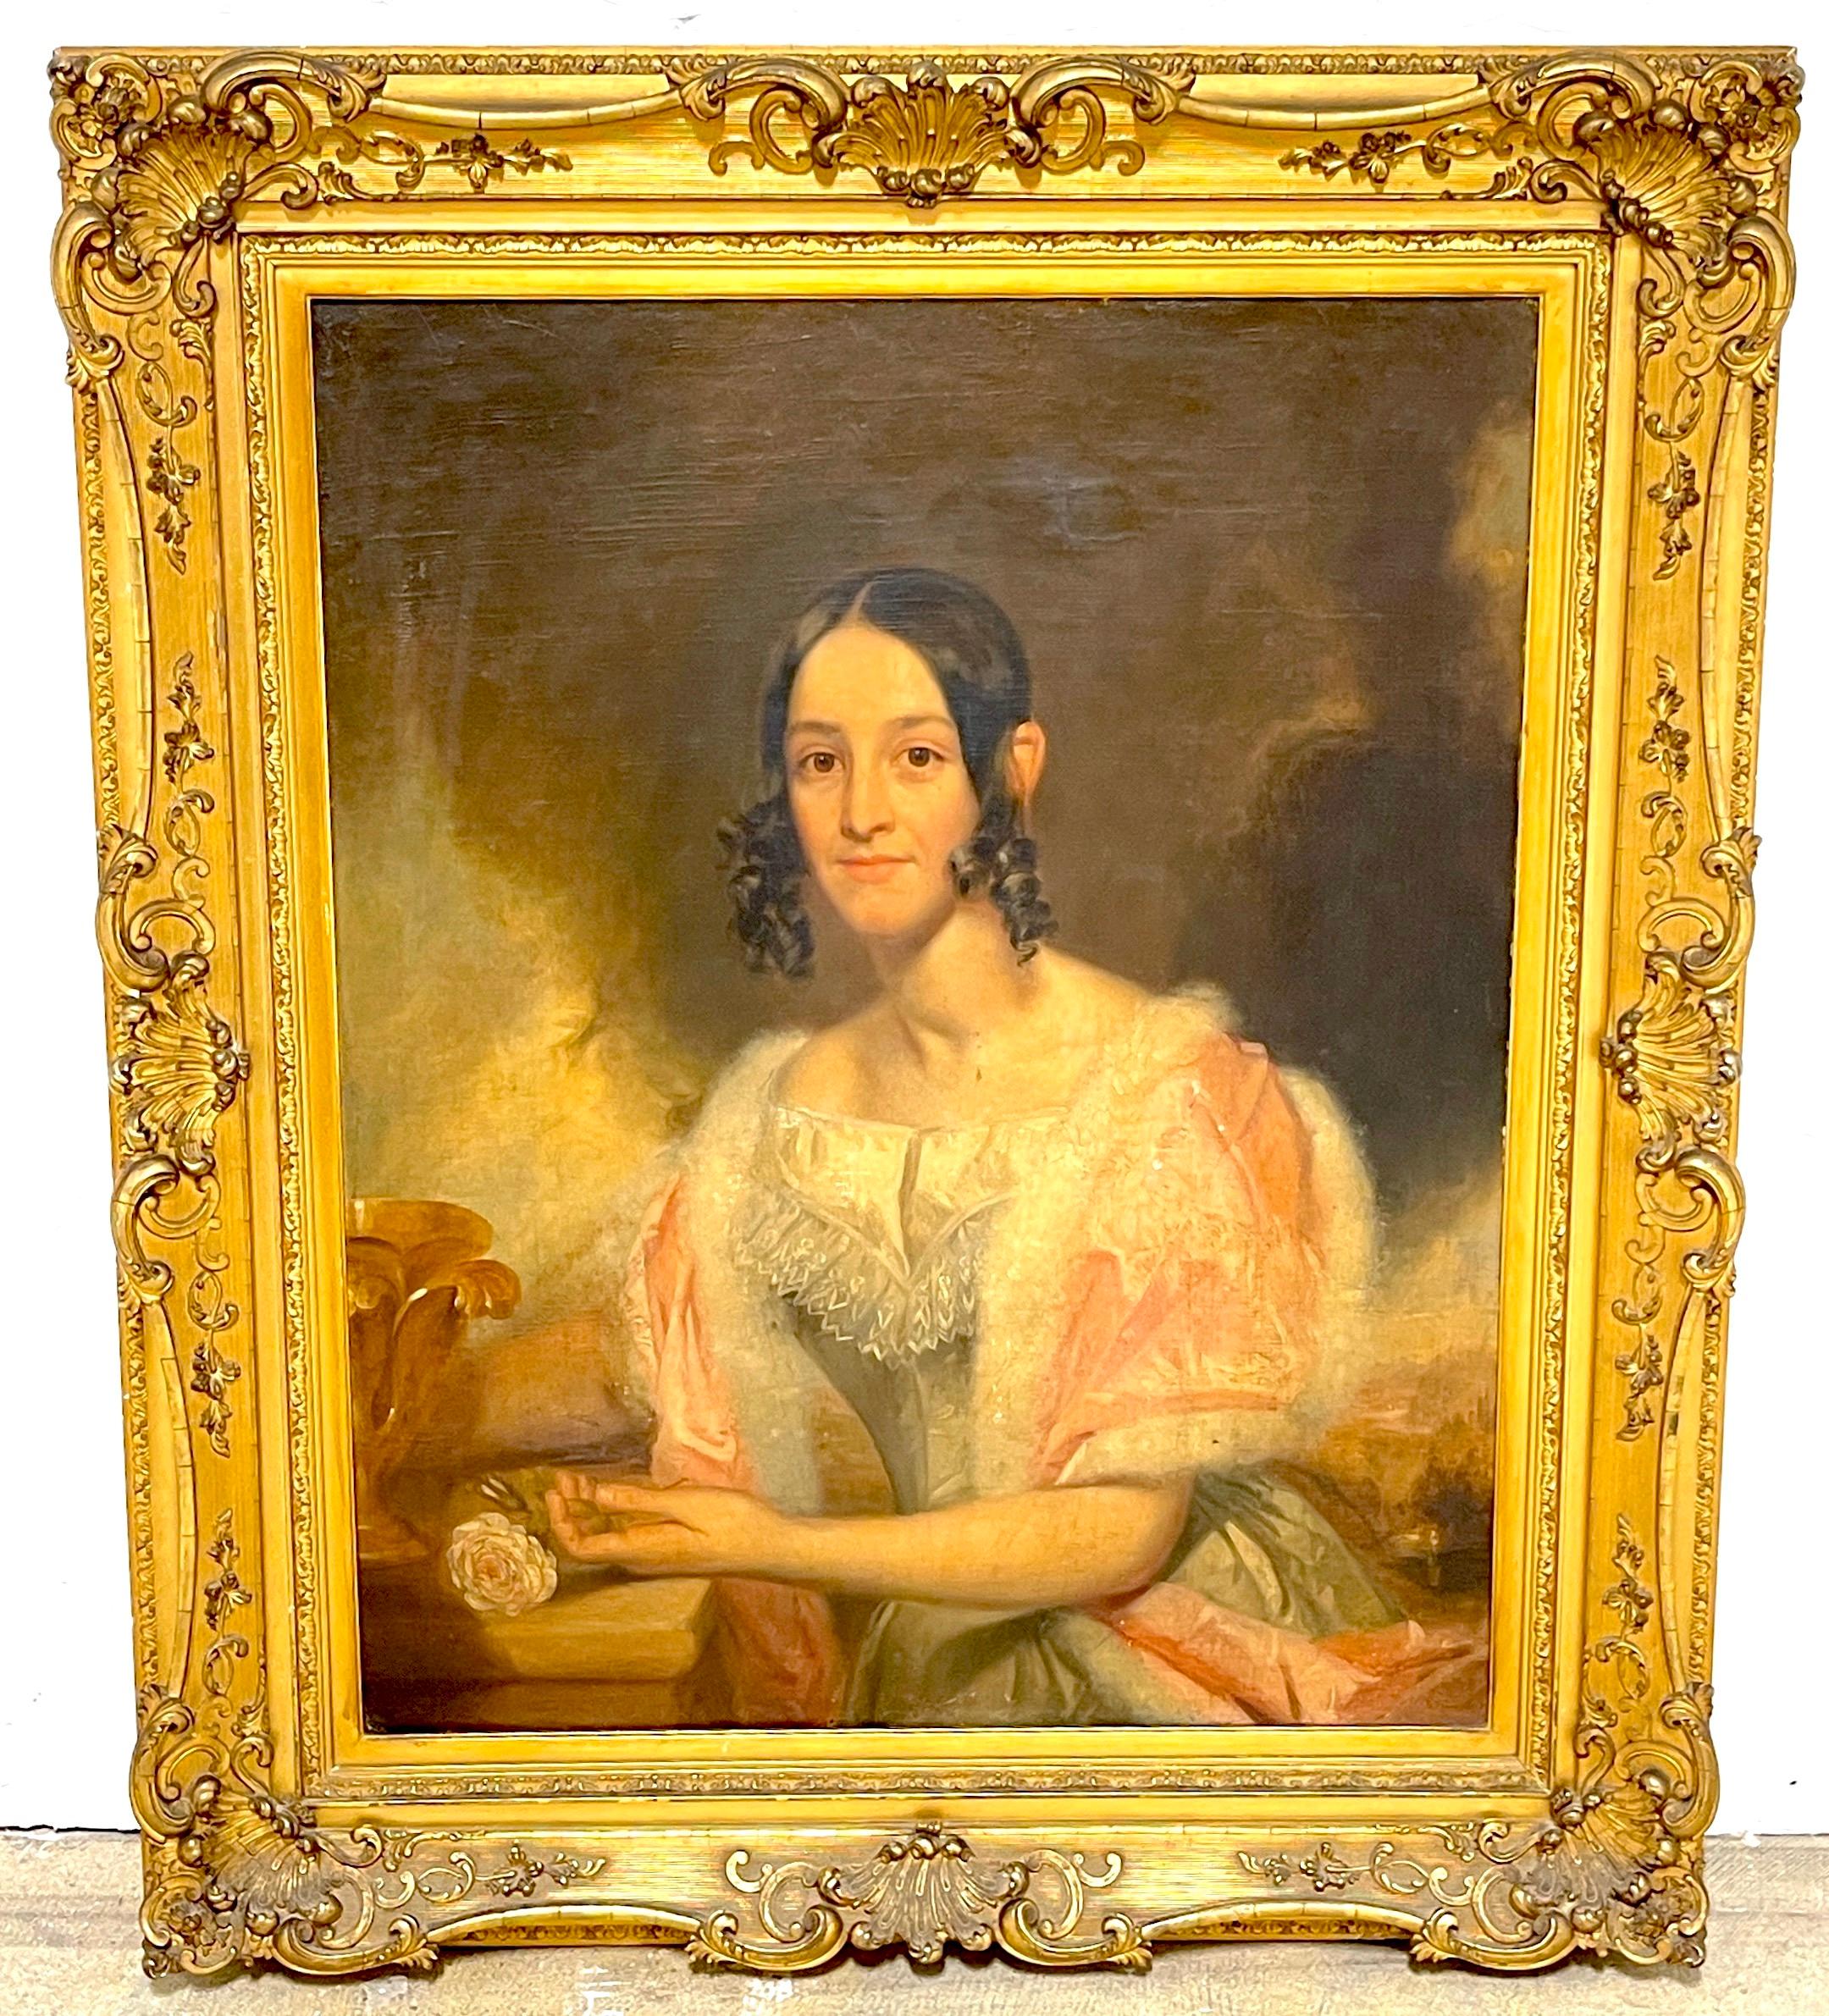 Amerikanisches Antebellum-Porträt einer Dame aus dem 19. Jahrhundert, Originalrahmen aus vergoldetem Holz 
Öl auf Leinwand 36-Zoll hoch x 30-Zoll breit 
Offensichtlich unsigniert 
USA, ca. 1850

Dieses amerikanische Antebellum-Porträt einer Dame aus